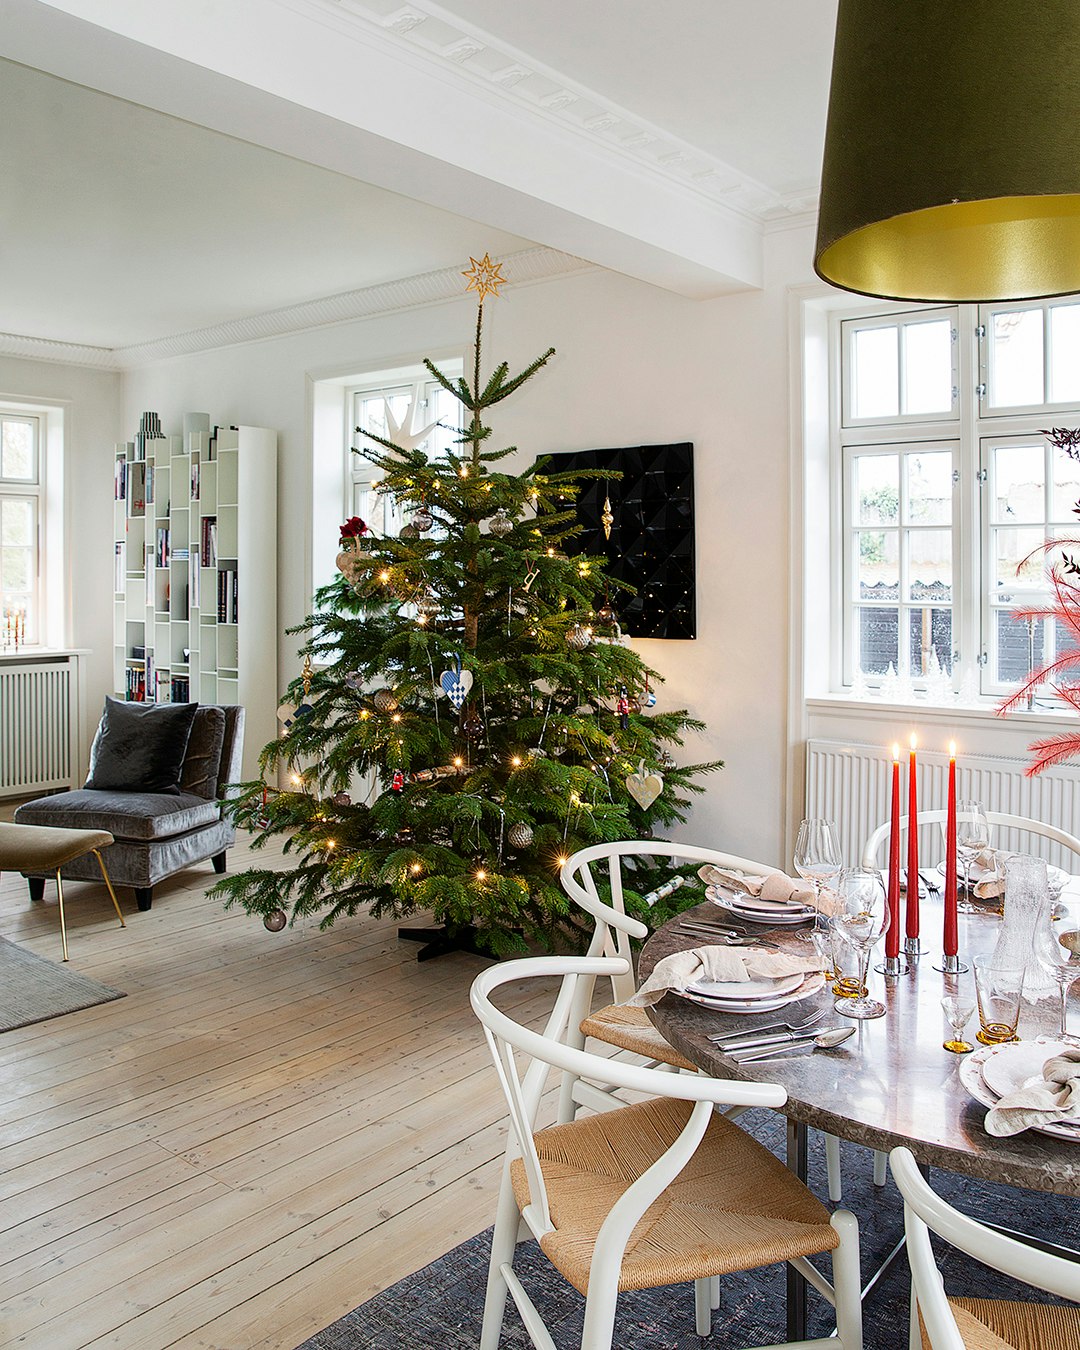 Juletræet i stuen